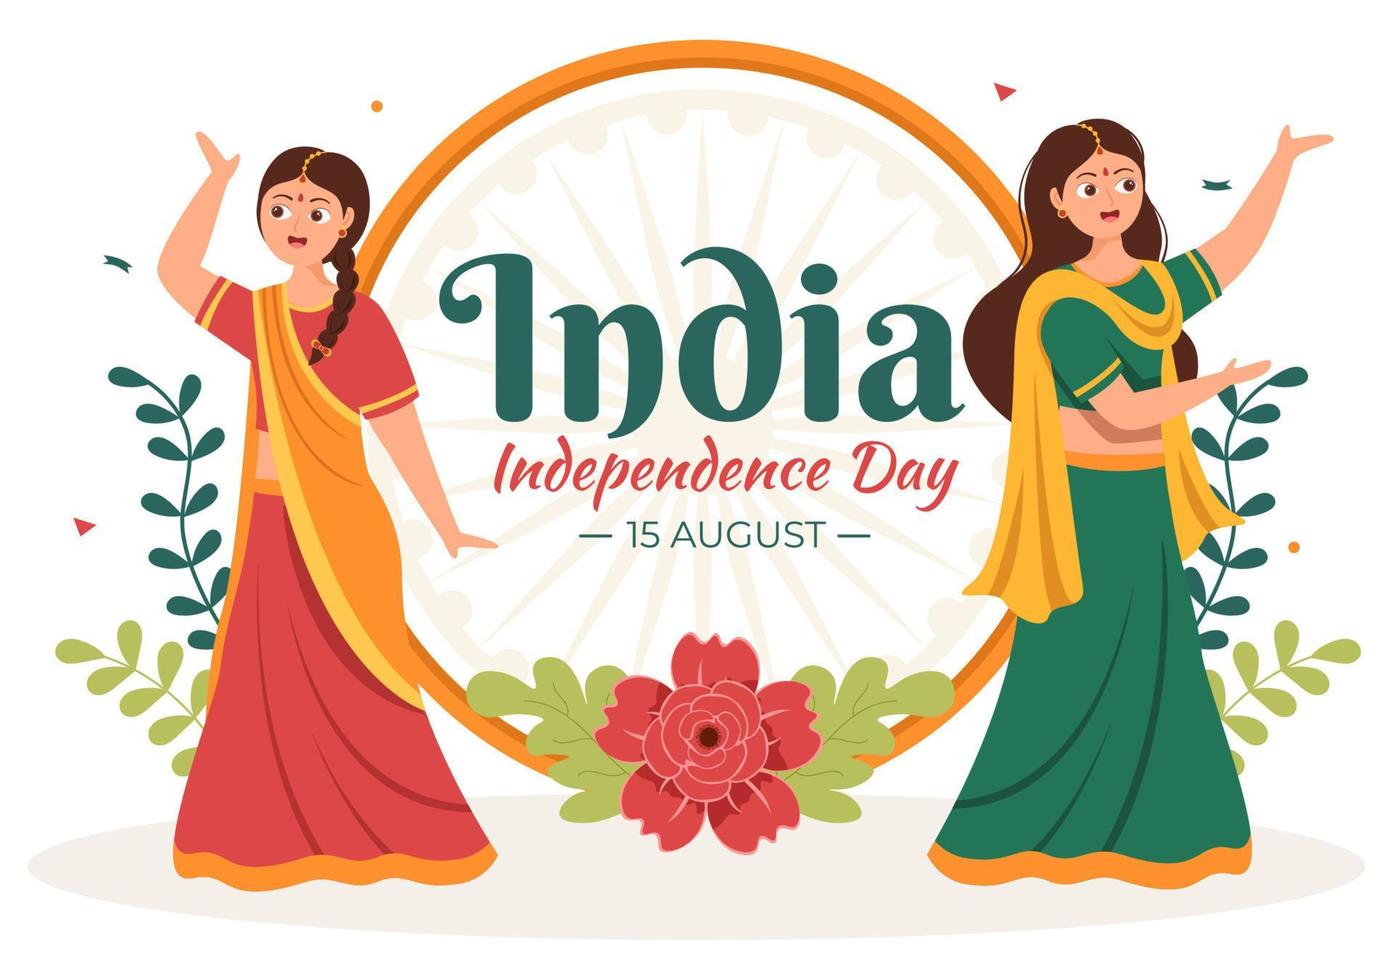 bonne fête de l'indépendance indienne qui est célébrée chaque août avec des drapeaux, des personnages et des roues ashoka dans l'illustration de style dessin animé vecteur